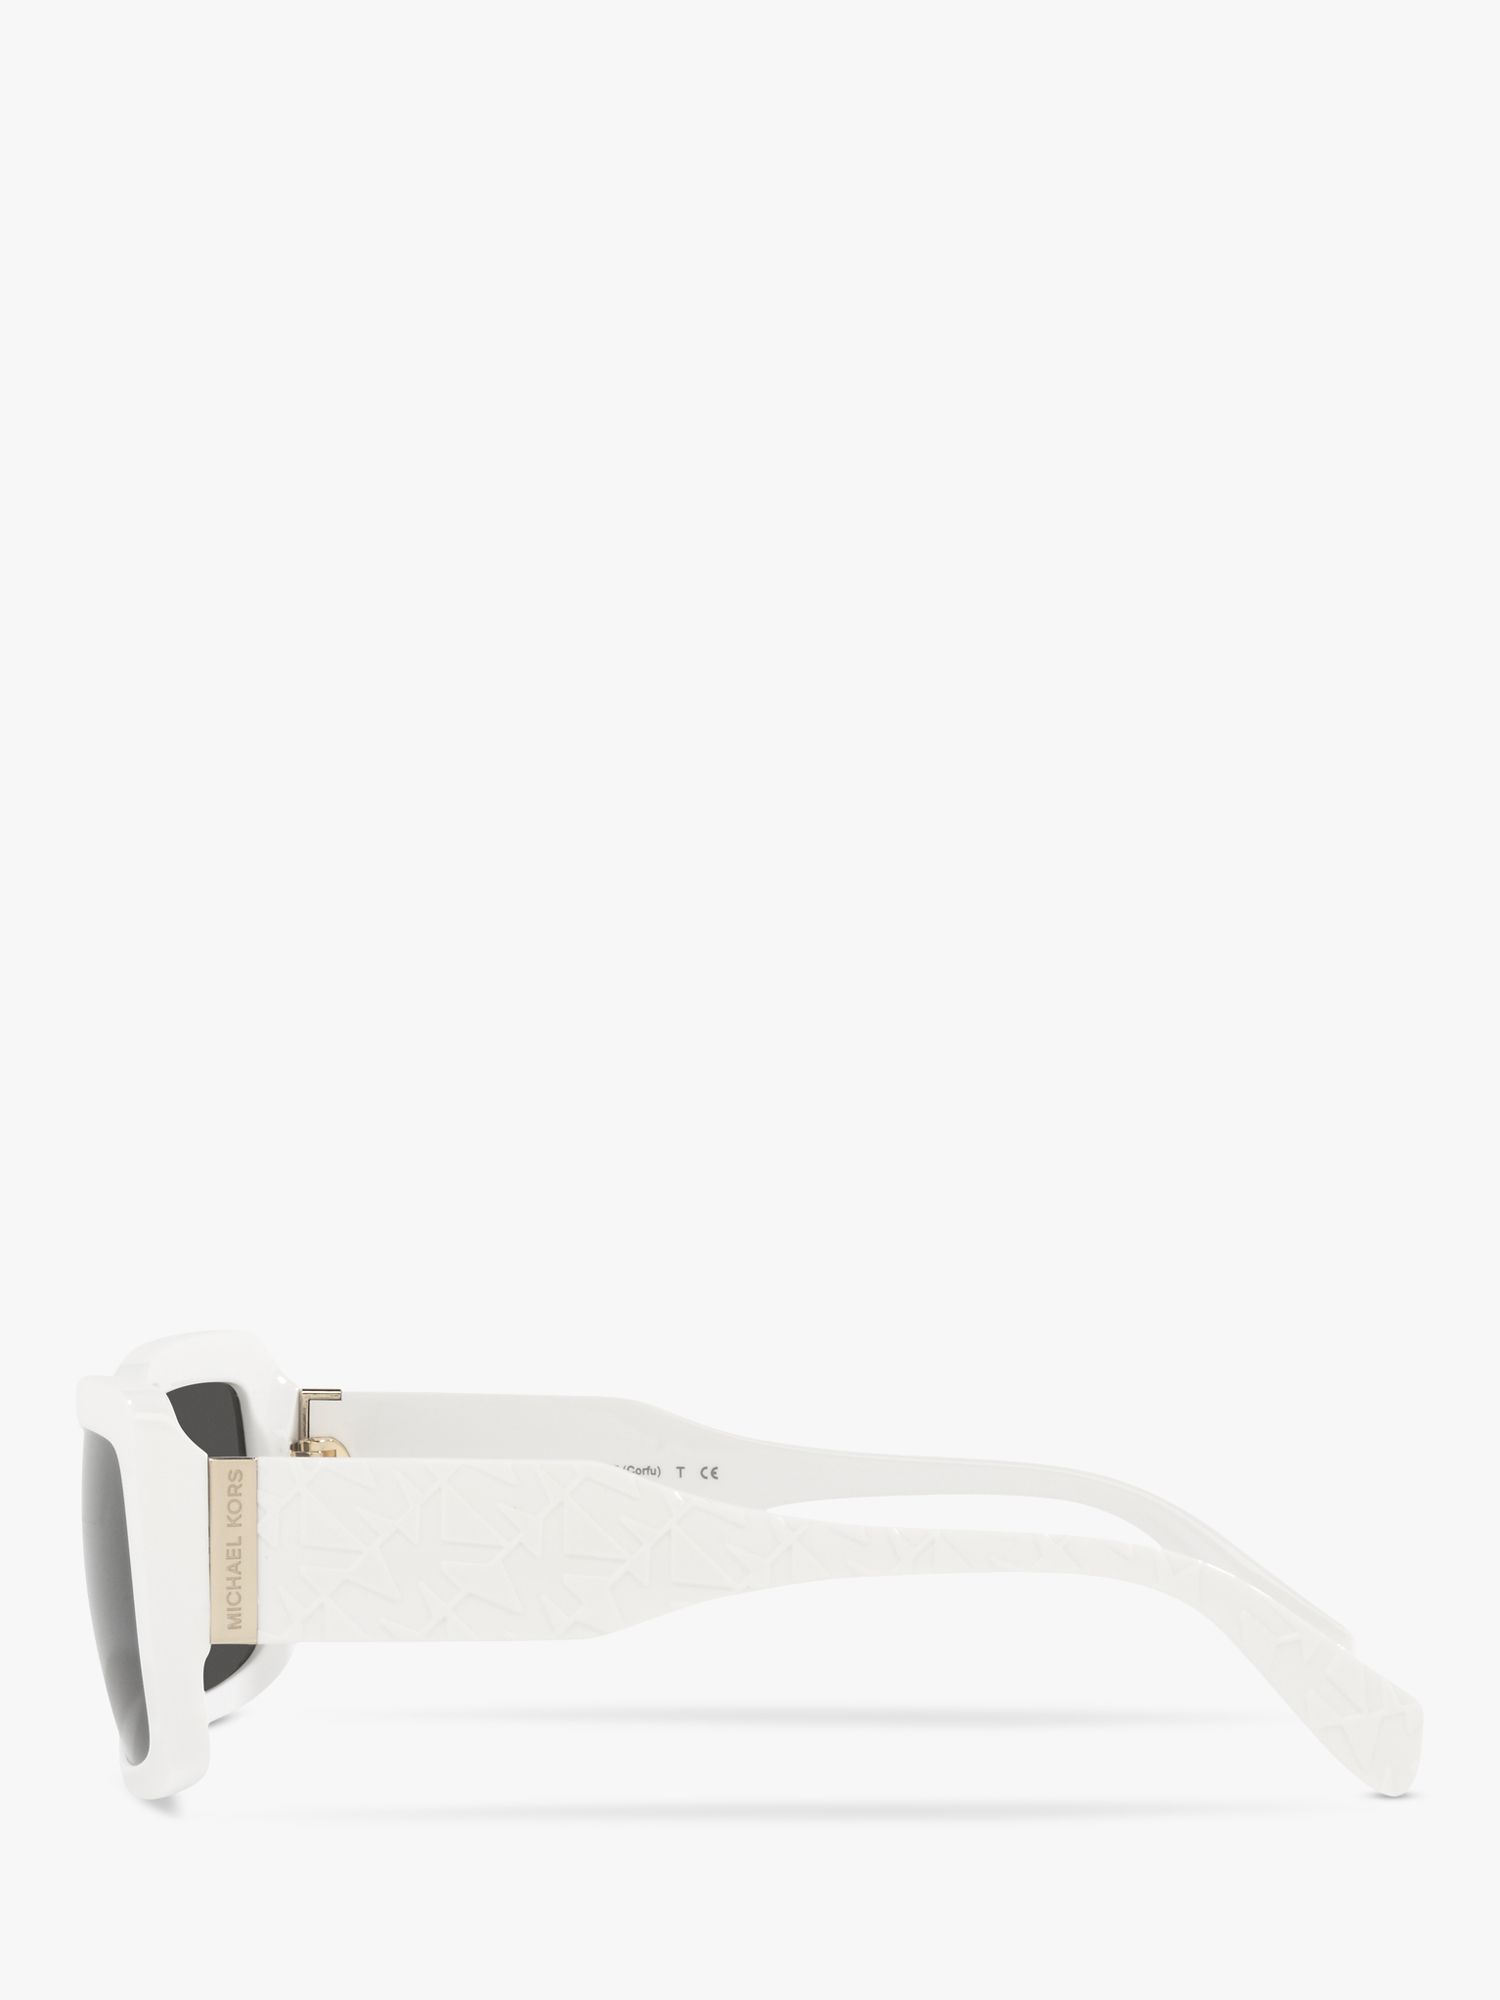 Michael Kors MK2165 Women's Corfu Rectangular Sunglasses, Optic White/Grey